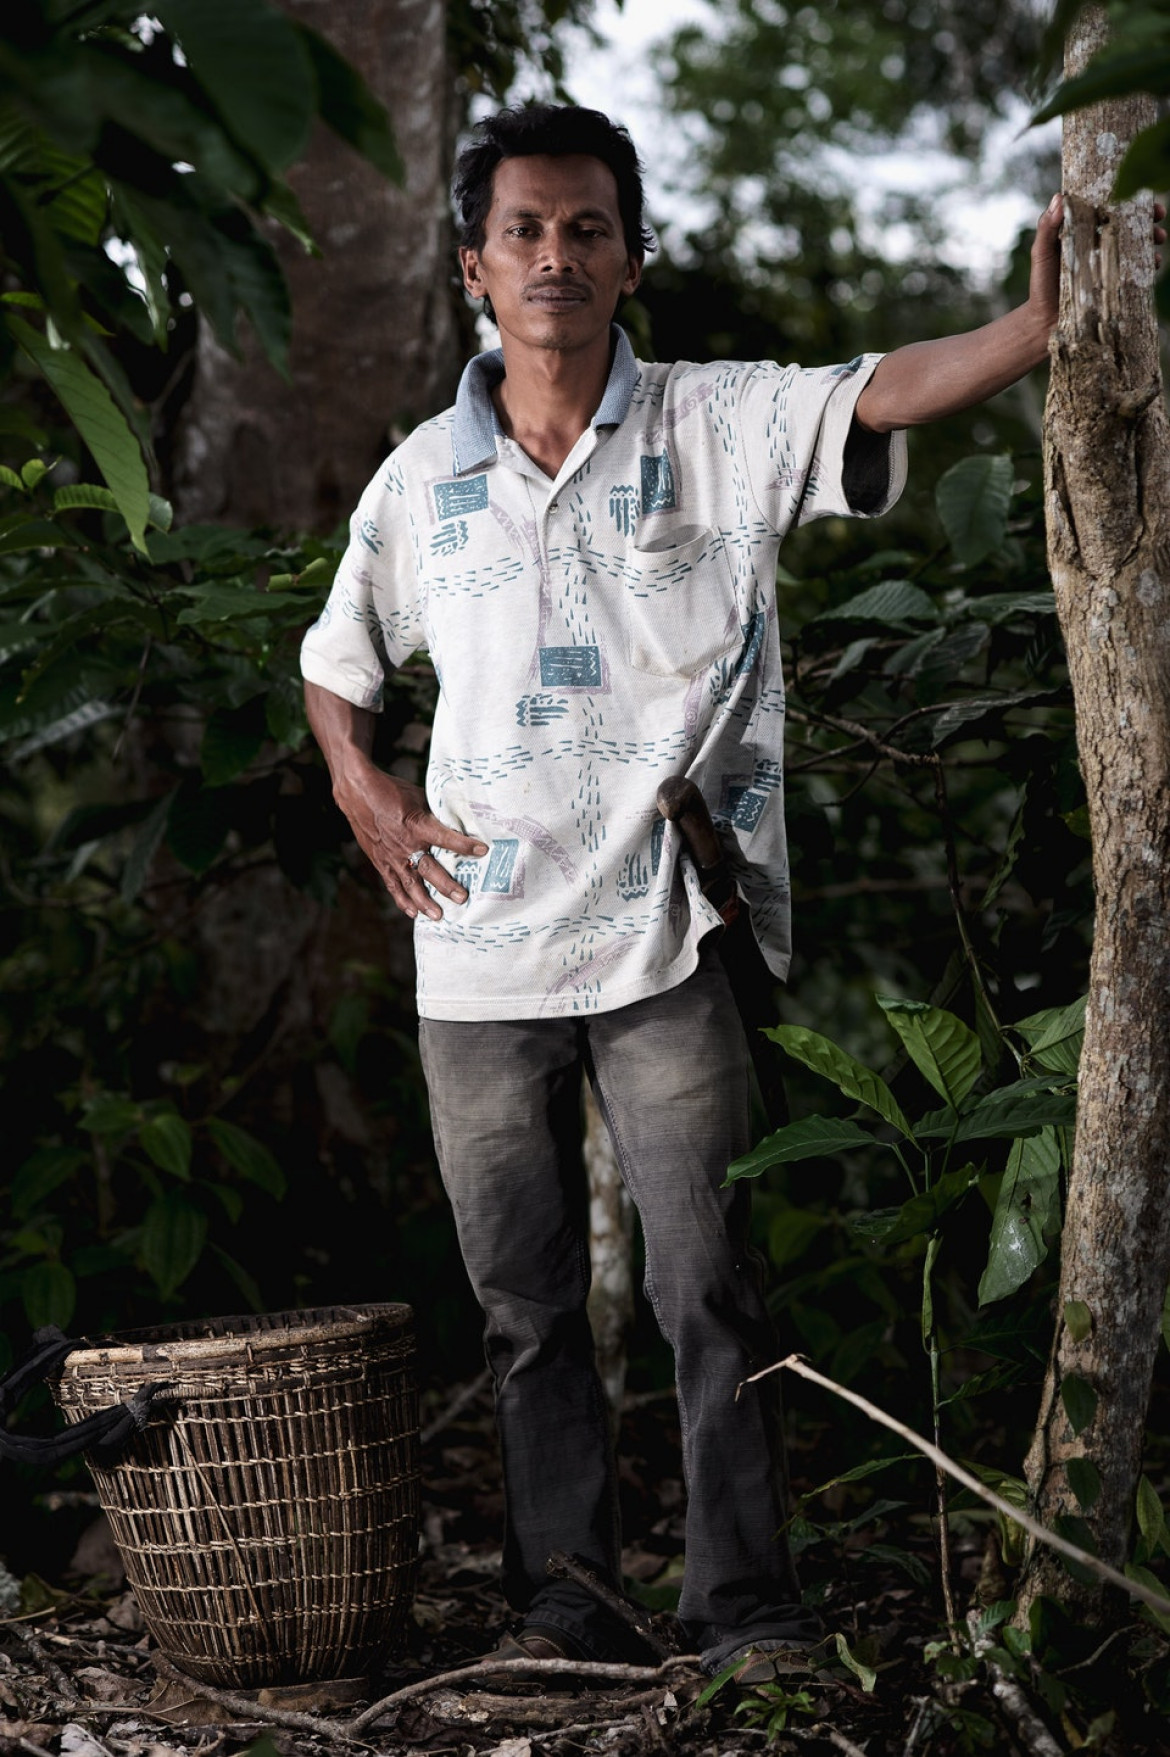 fot. Maxime Riche / Decade of Change<br></br><br></br>Portret Amira (36 lat), właściciela plantacji owoców i kawy Sinar Gallih. Amir to były nielegalny drwal, który wrócił do zrównoważonych praktyk rolniczych, chroniąc las przed wylesianiem w Parku Narodowym Bukit Barisan Selatan, wokół którego żyje.